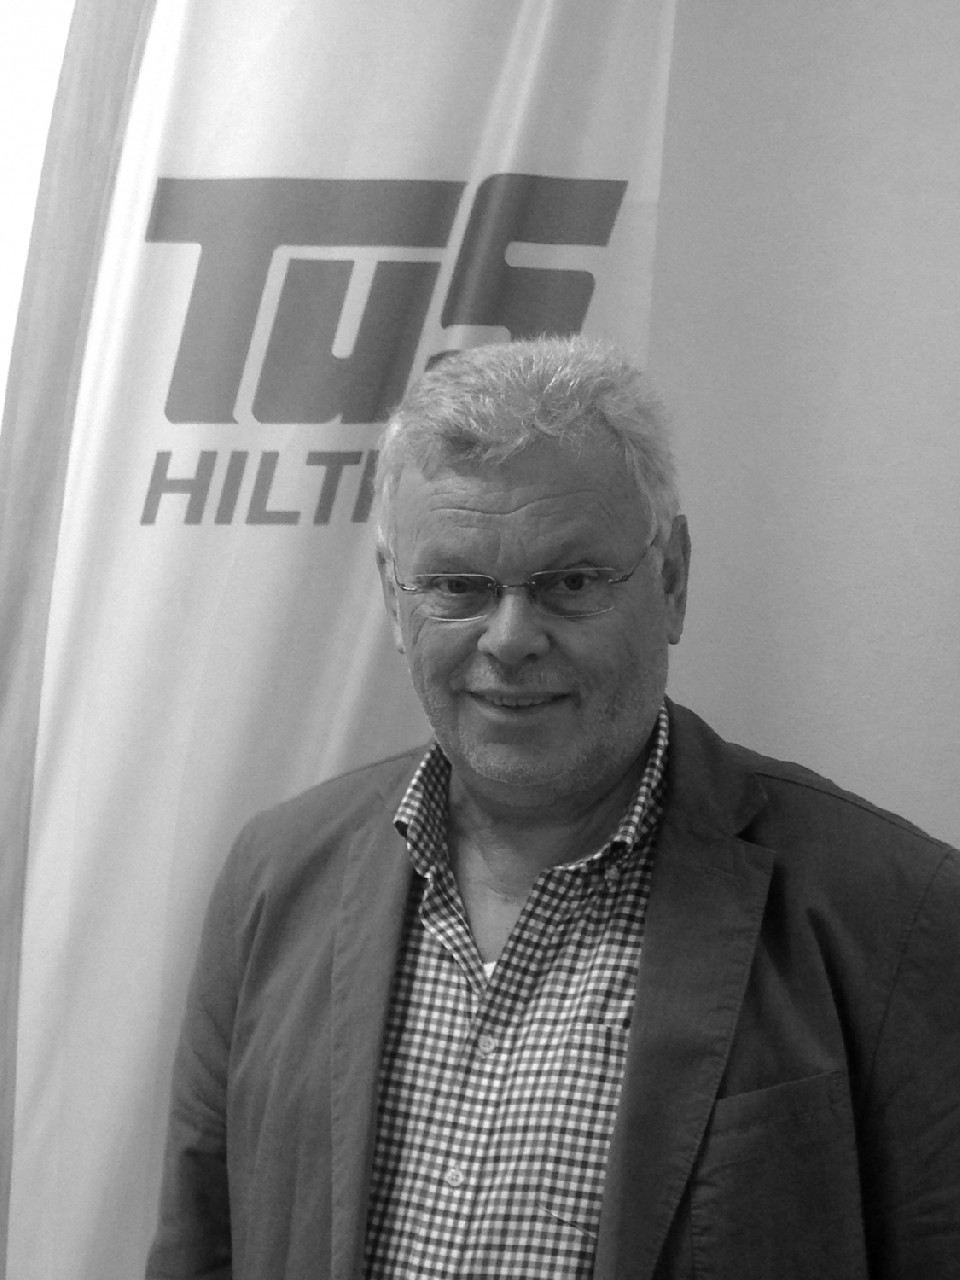 Der TuS Hiltrup trauert um seinen Präsidenten Georg Berding